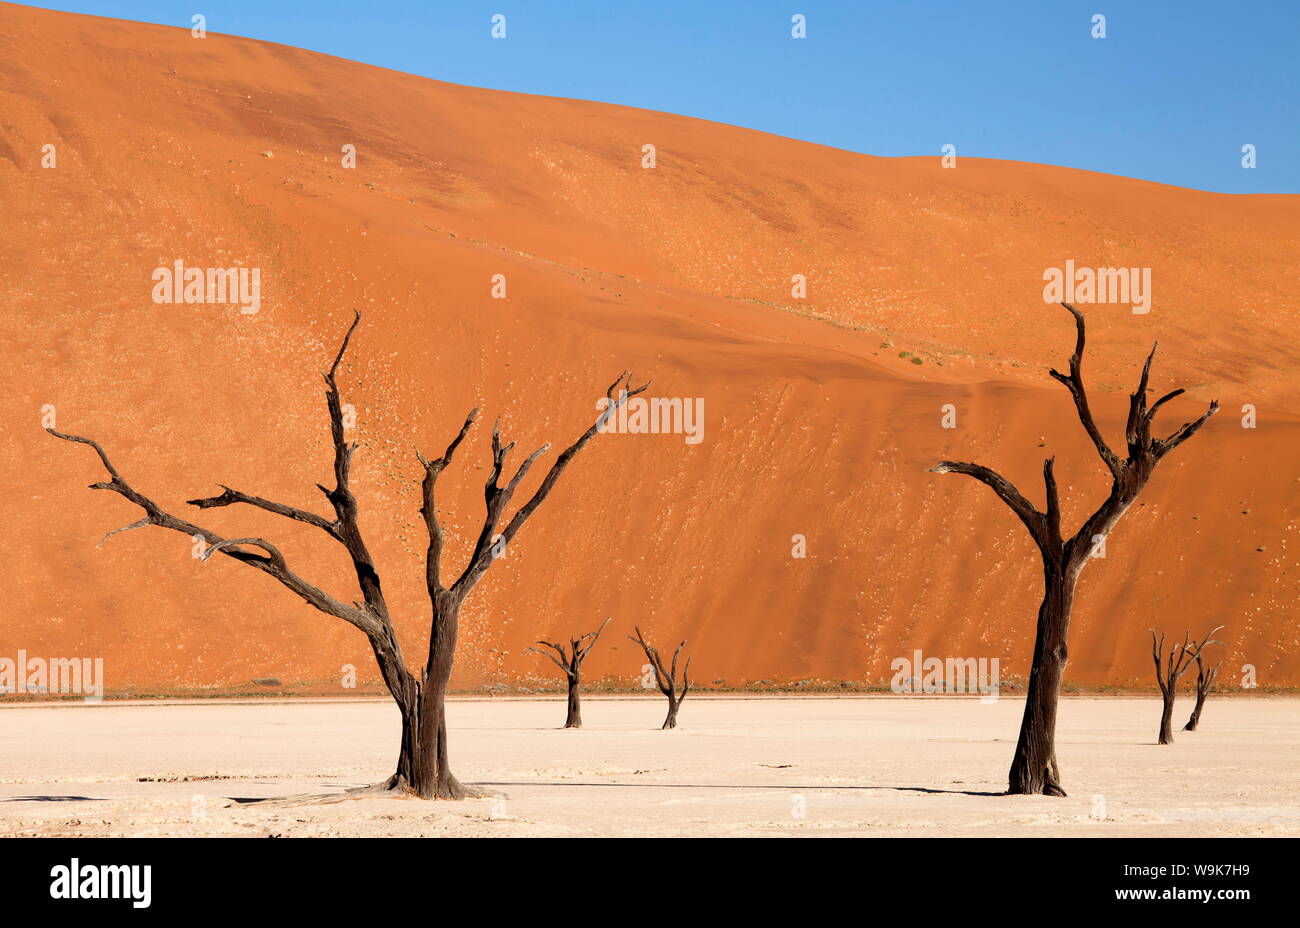 Arbres camelthorn morts dit être vieux de plusieurs siècles contre les immenses dunes de sable orange du désert du Namib au Dead Vlei, Désert du Namib, Namibie Banque D'Images